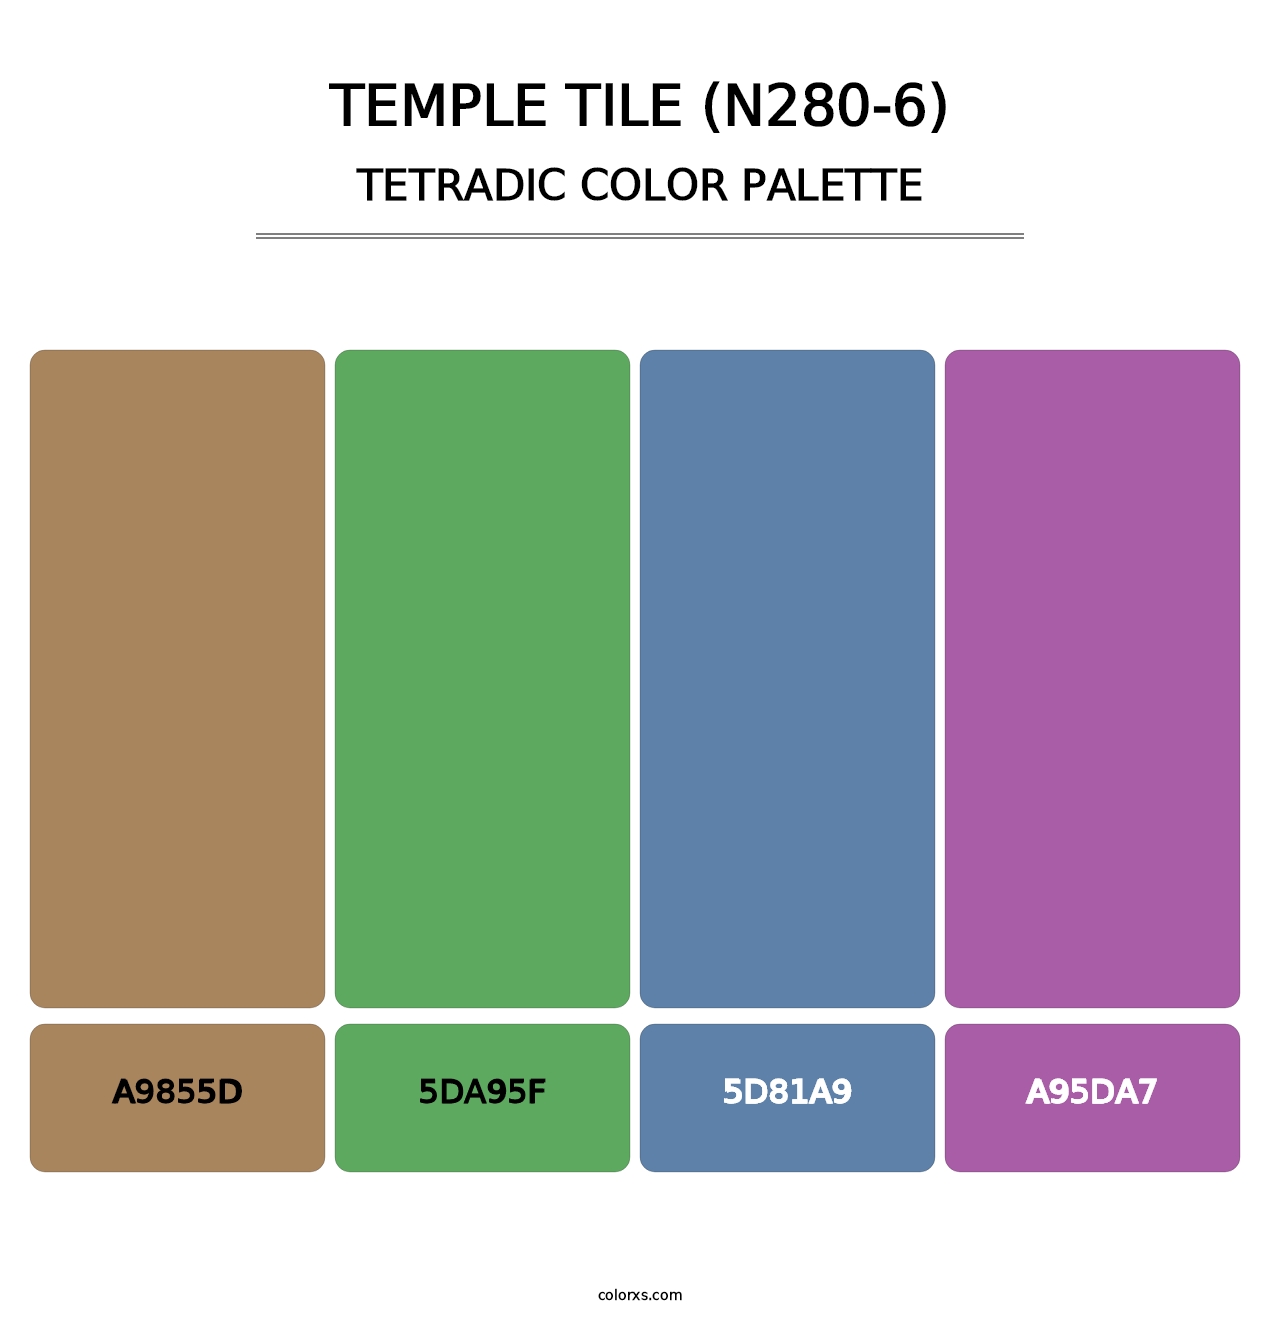 Temple Tile (N280-6) - Tetradic Color Palette